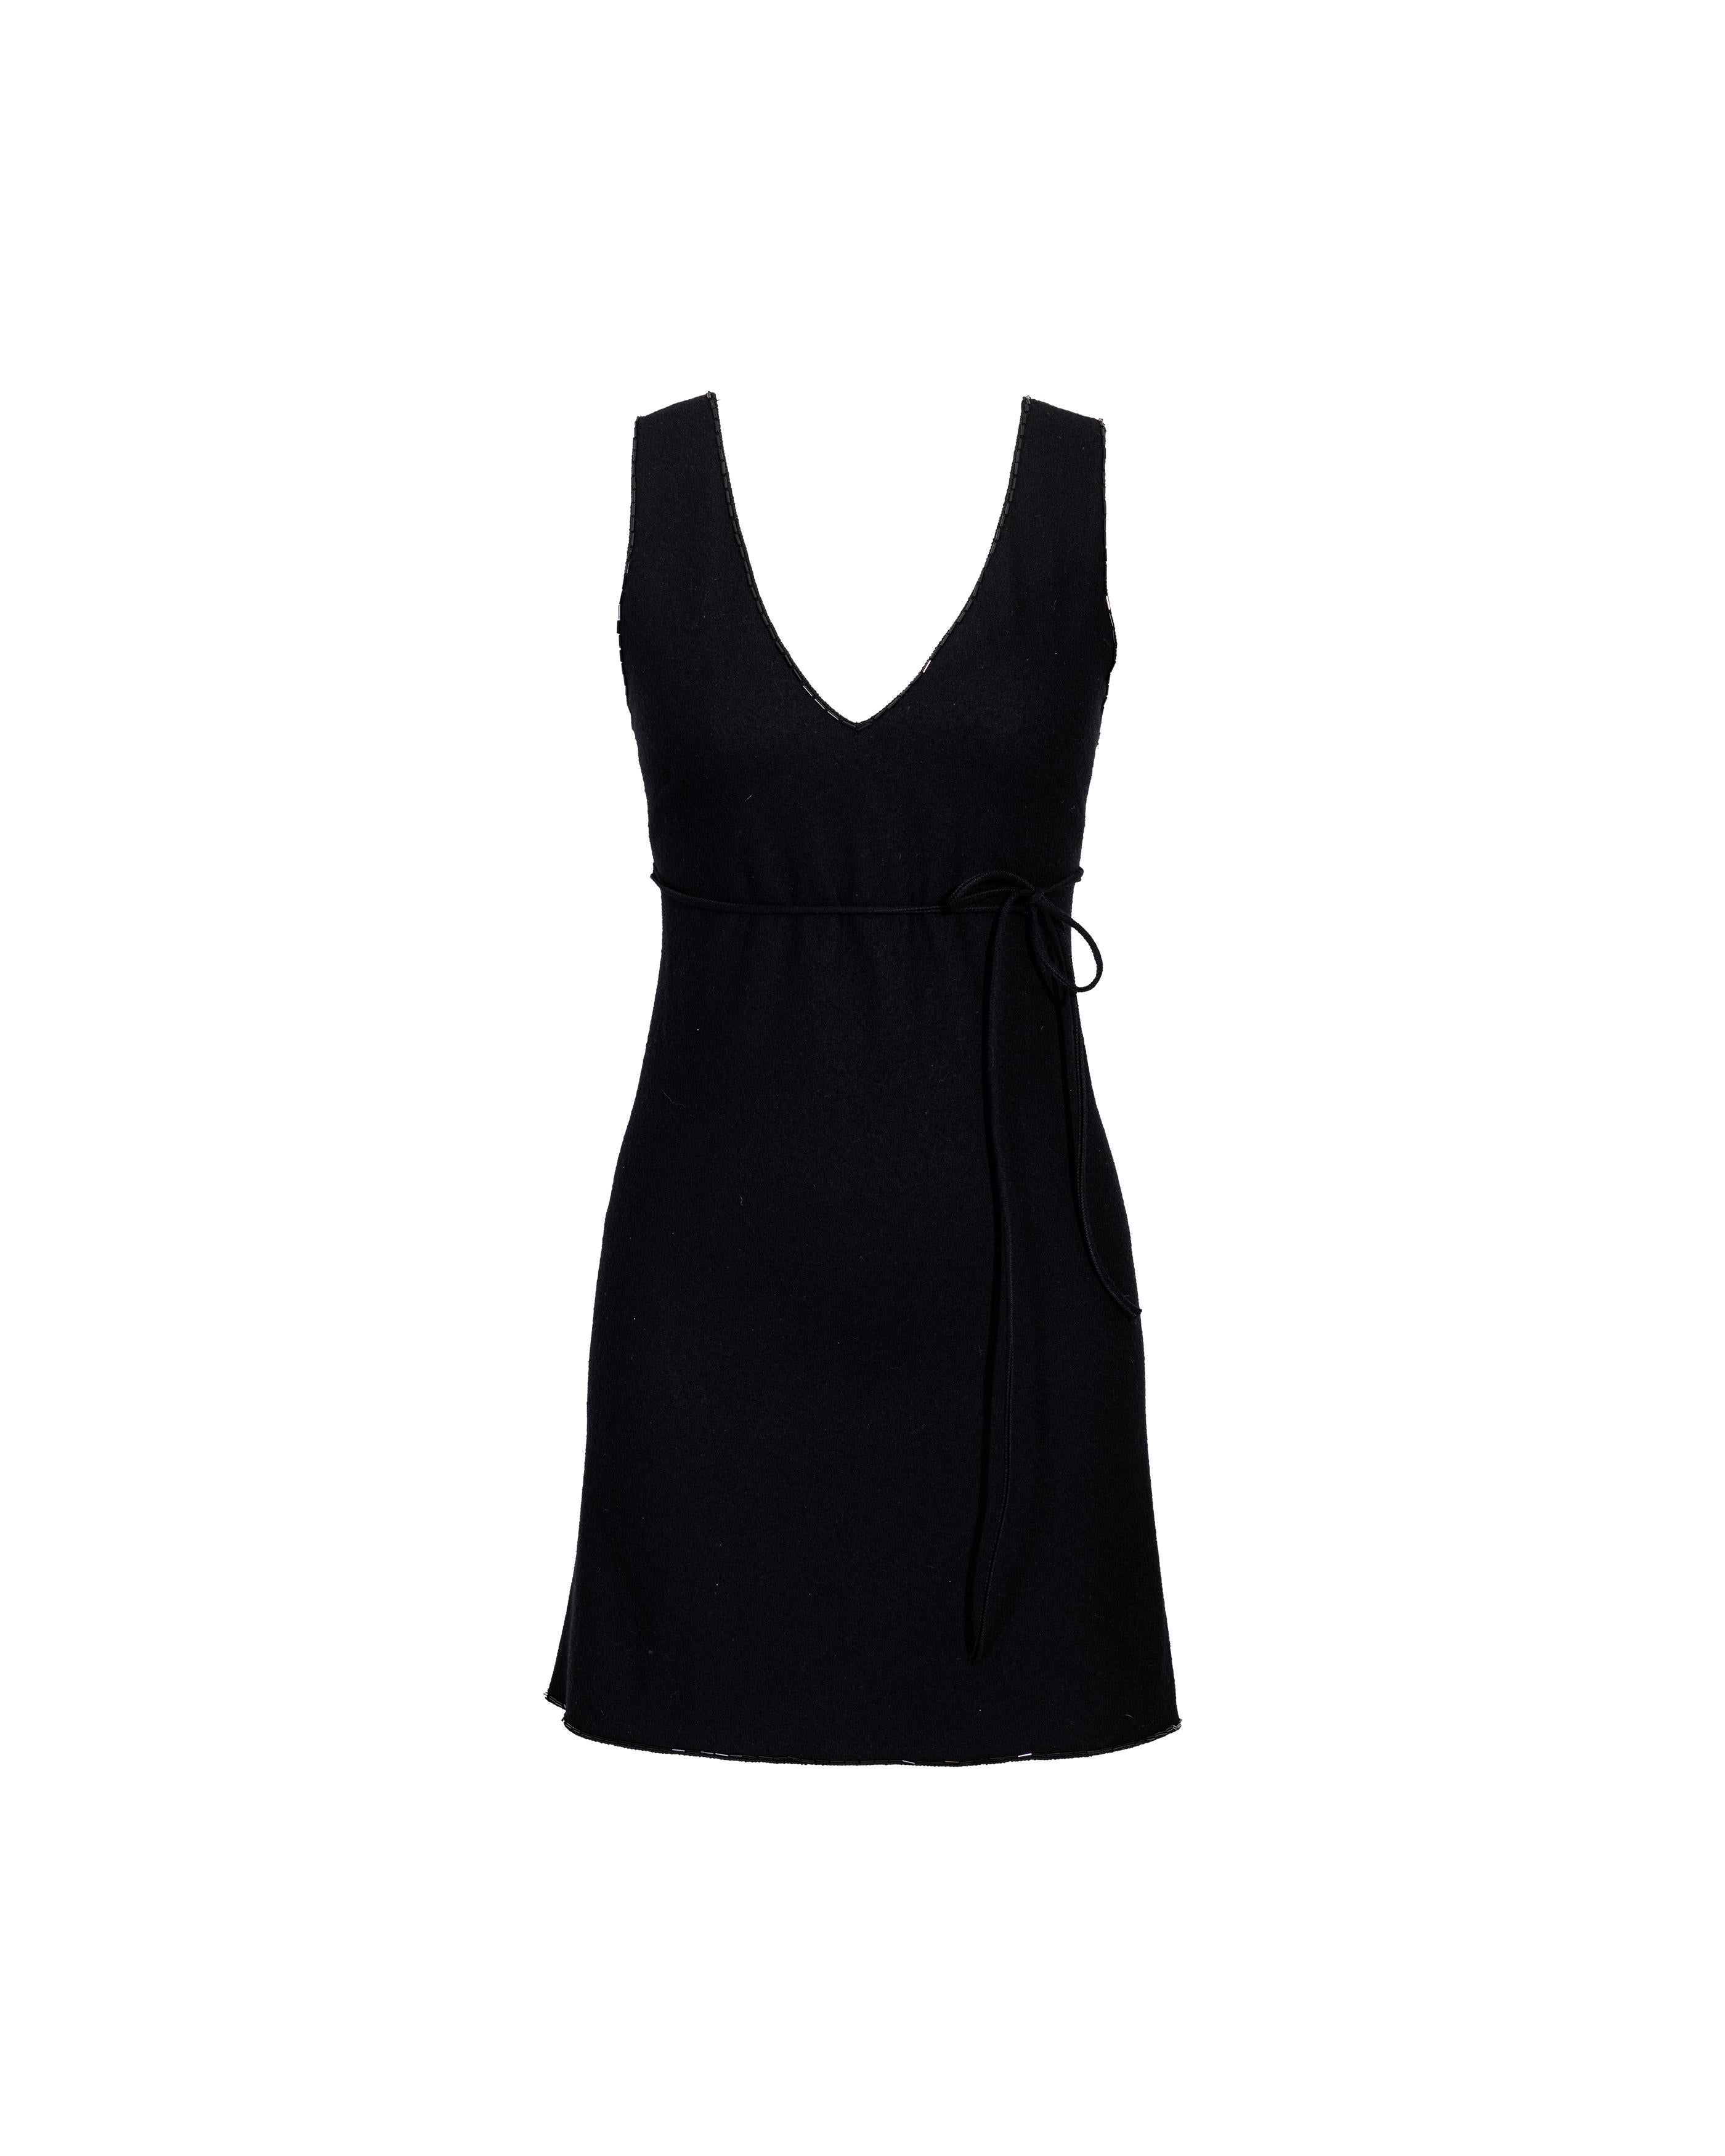 A/W 1997 Prada by Miuccia Prada Black Wool Mini Dress with Beaded Trim 1